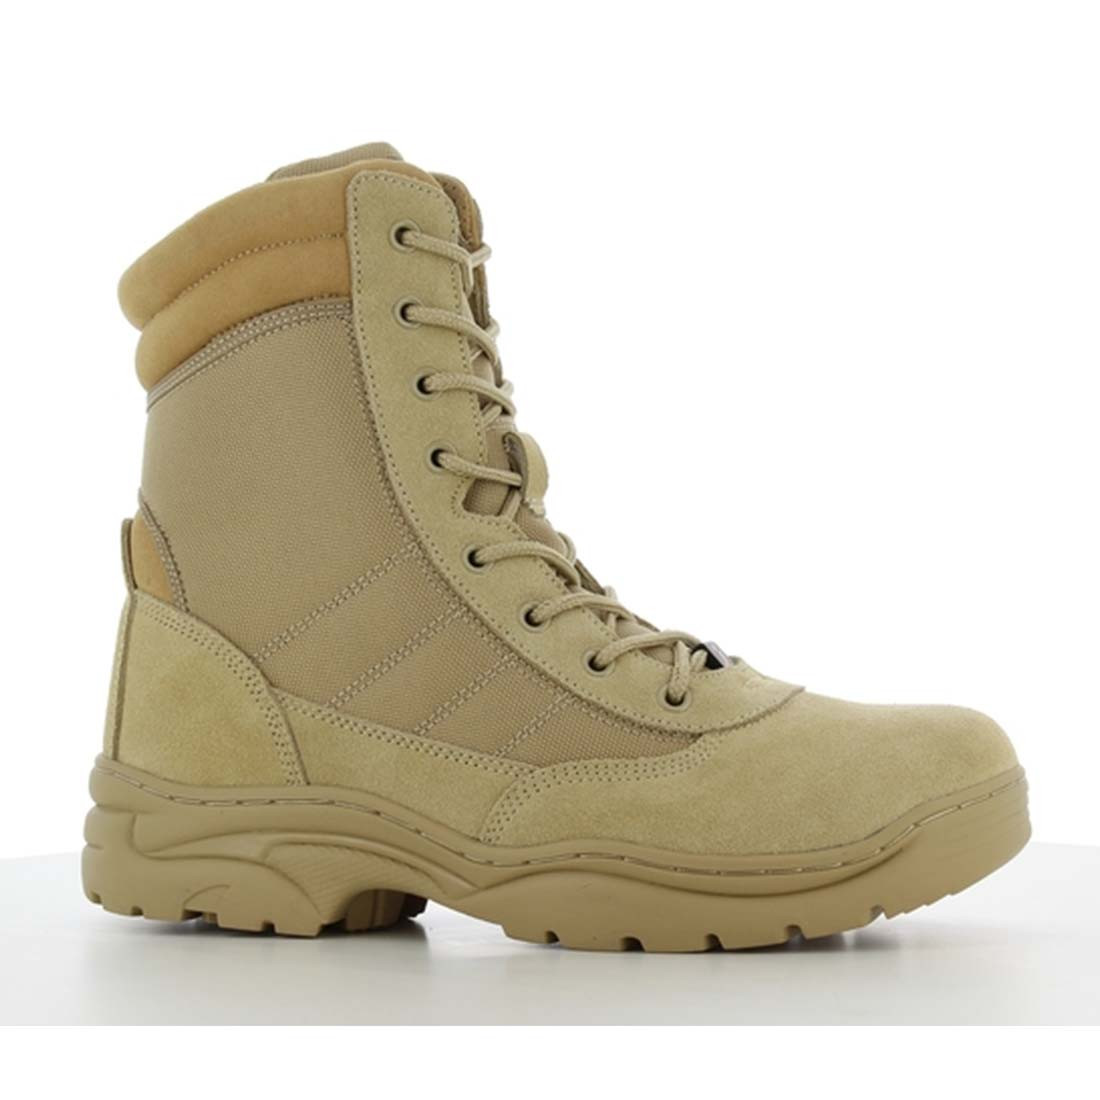 Bottes militaires hautes DUNE - Les chaussures de protection